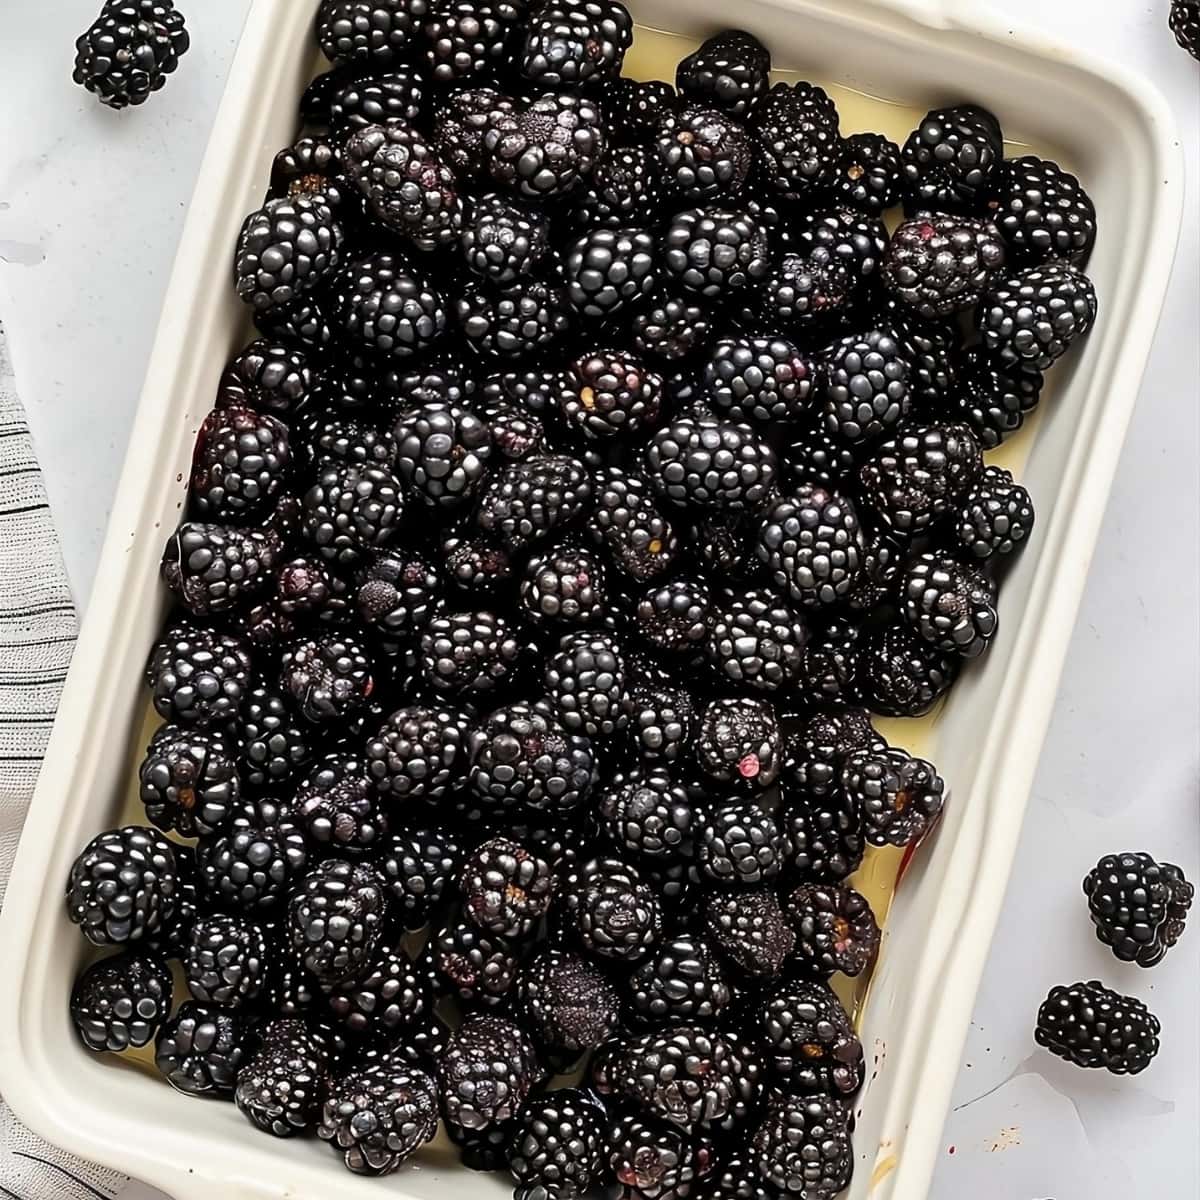 Fresh blackberries on baking dish.